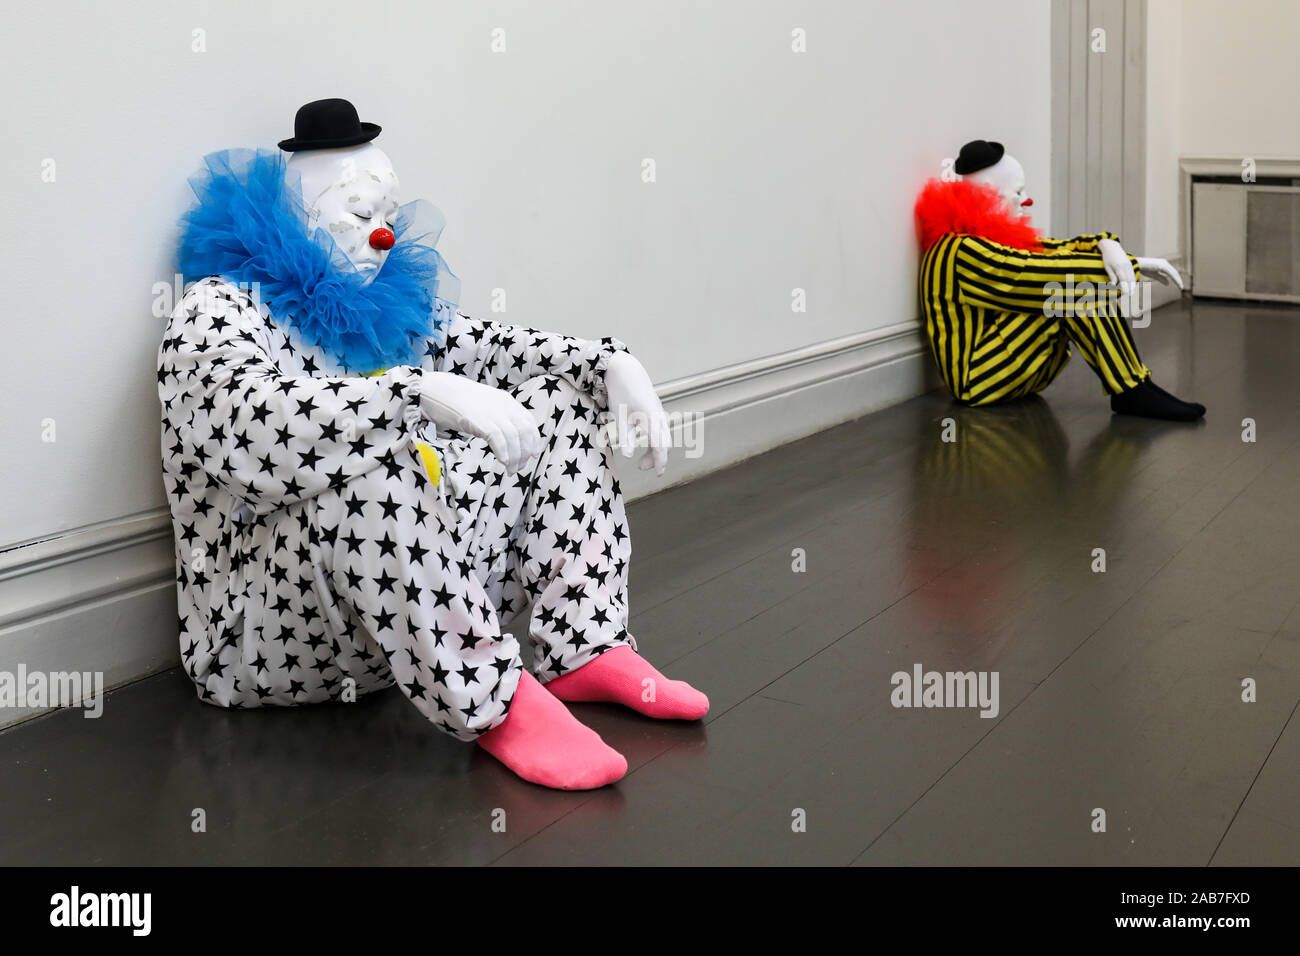 Iper-realistico clown scolpiti a " chiunque diventa più leggero " o " vocabolario della solitudine' mostra d'arte a Helsinki in Finlandia Foto Stock